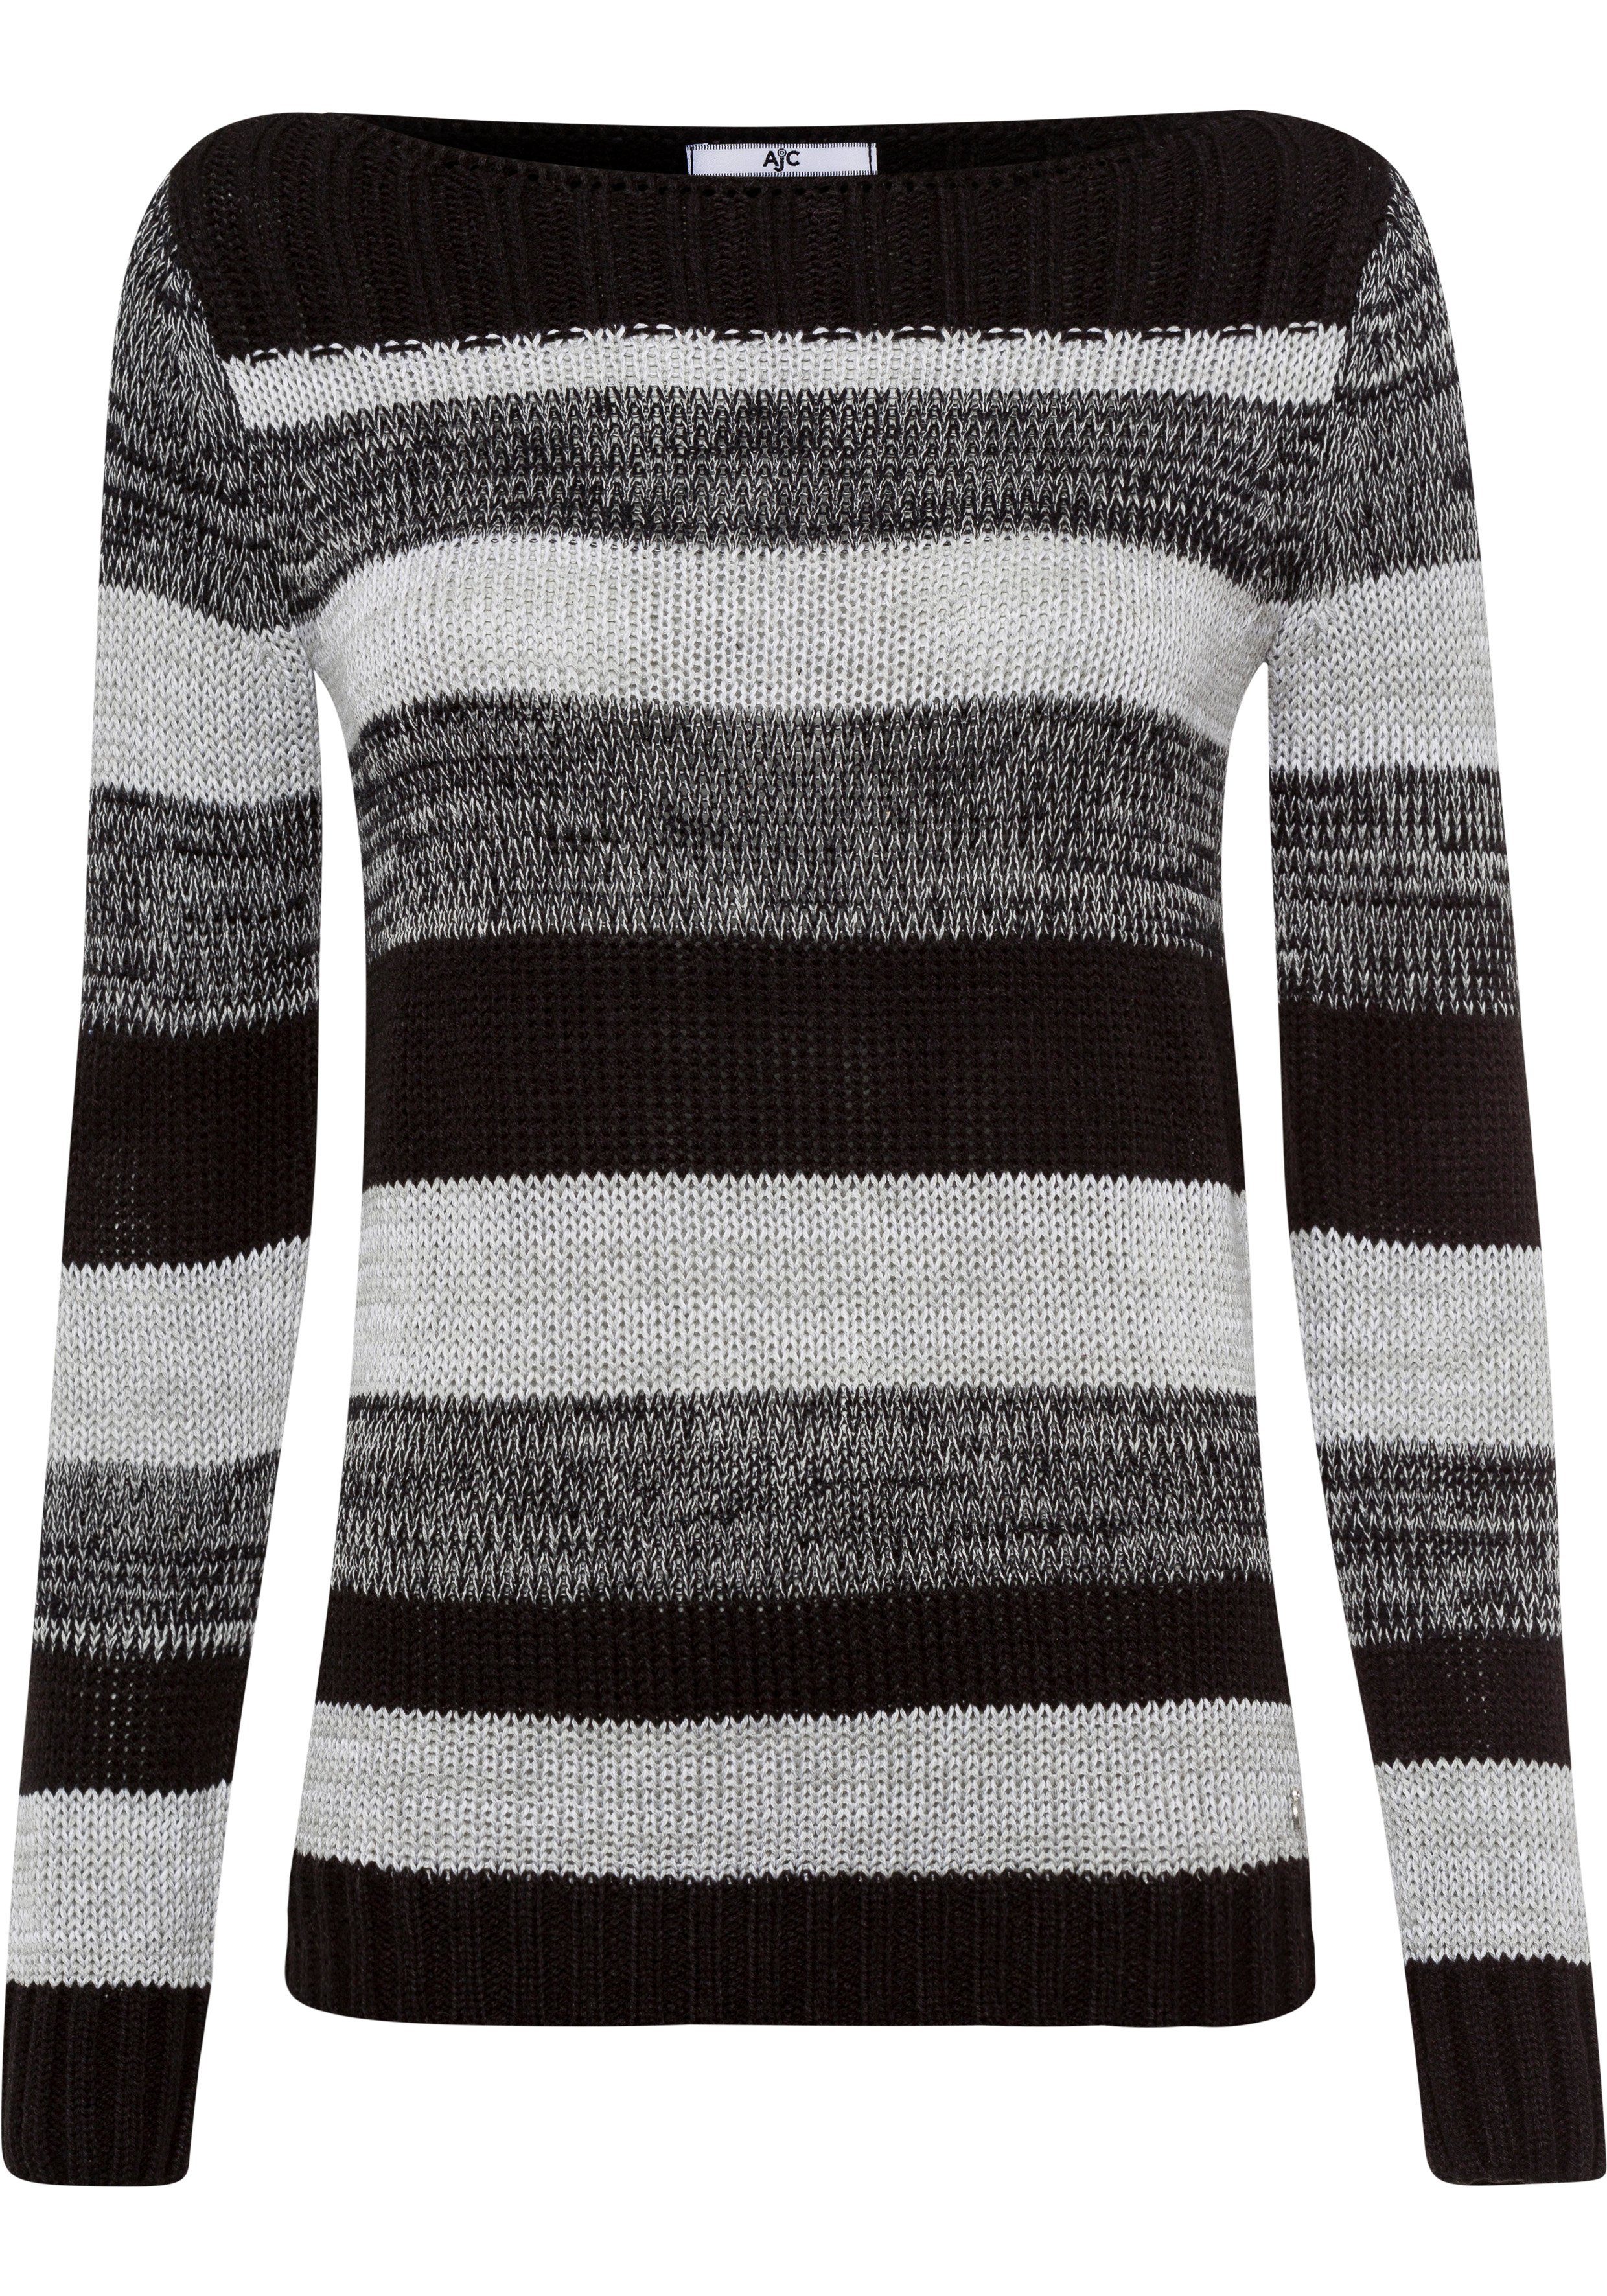 Streifen Dessin AJC (Pullover nachhaltigem aus tollen Material) Streifenpullover schwarz im